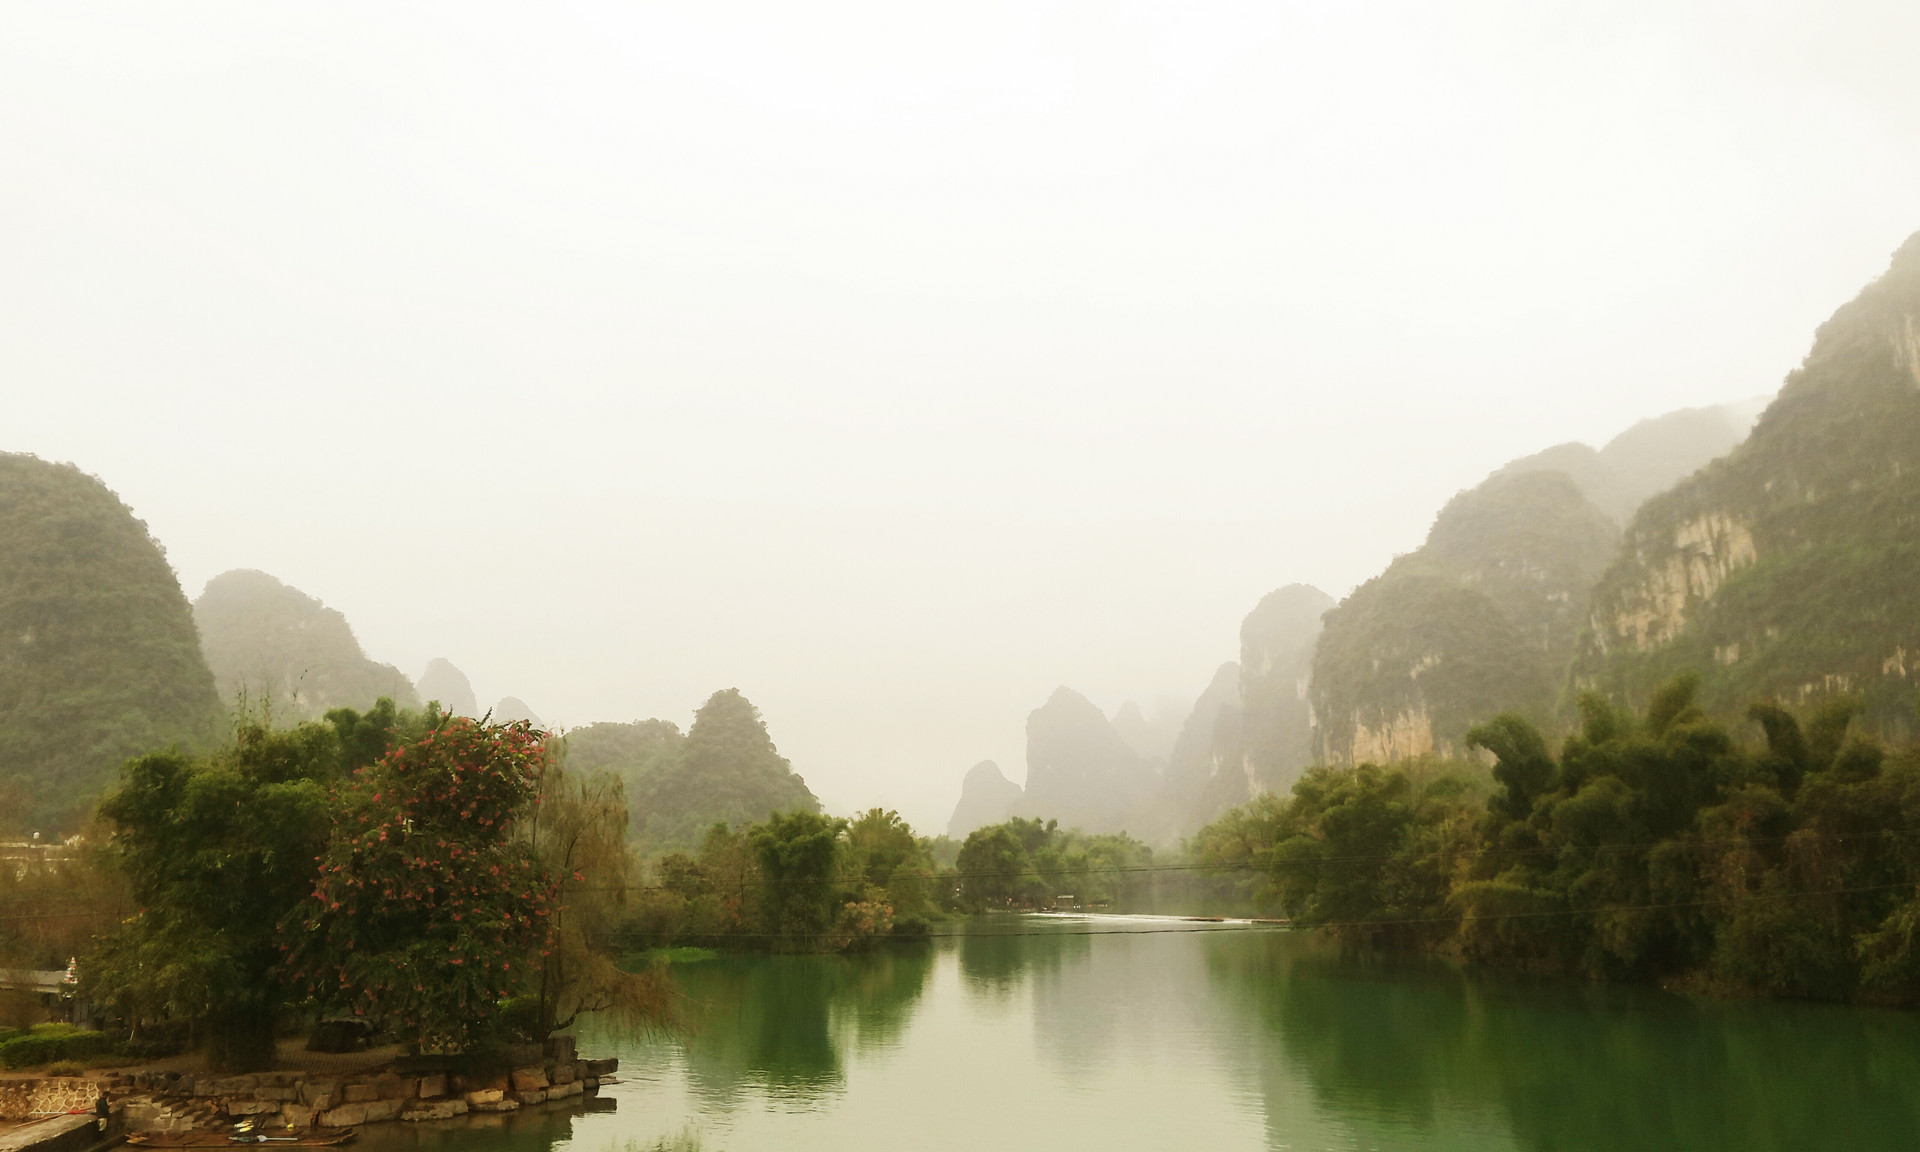 桂林旅游罗山湖项目建设7年未果 征地过程曾有纠纷